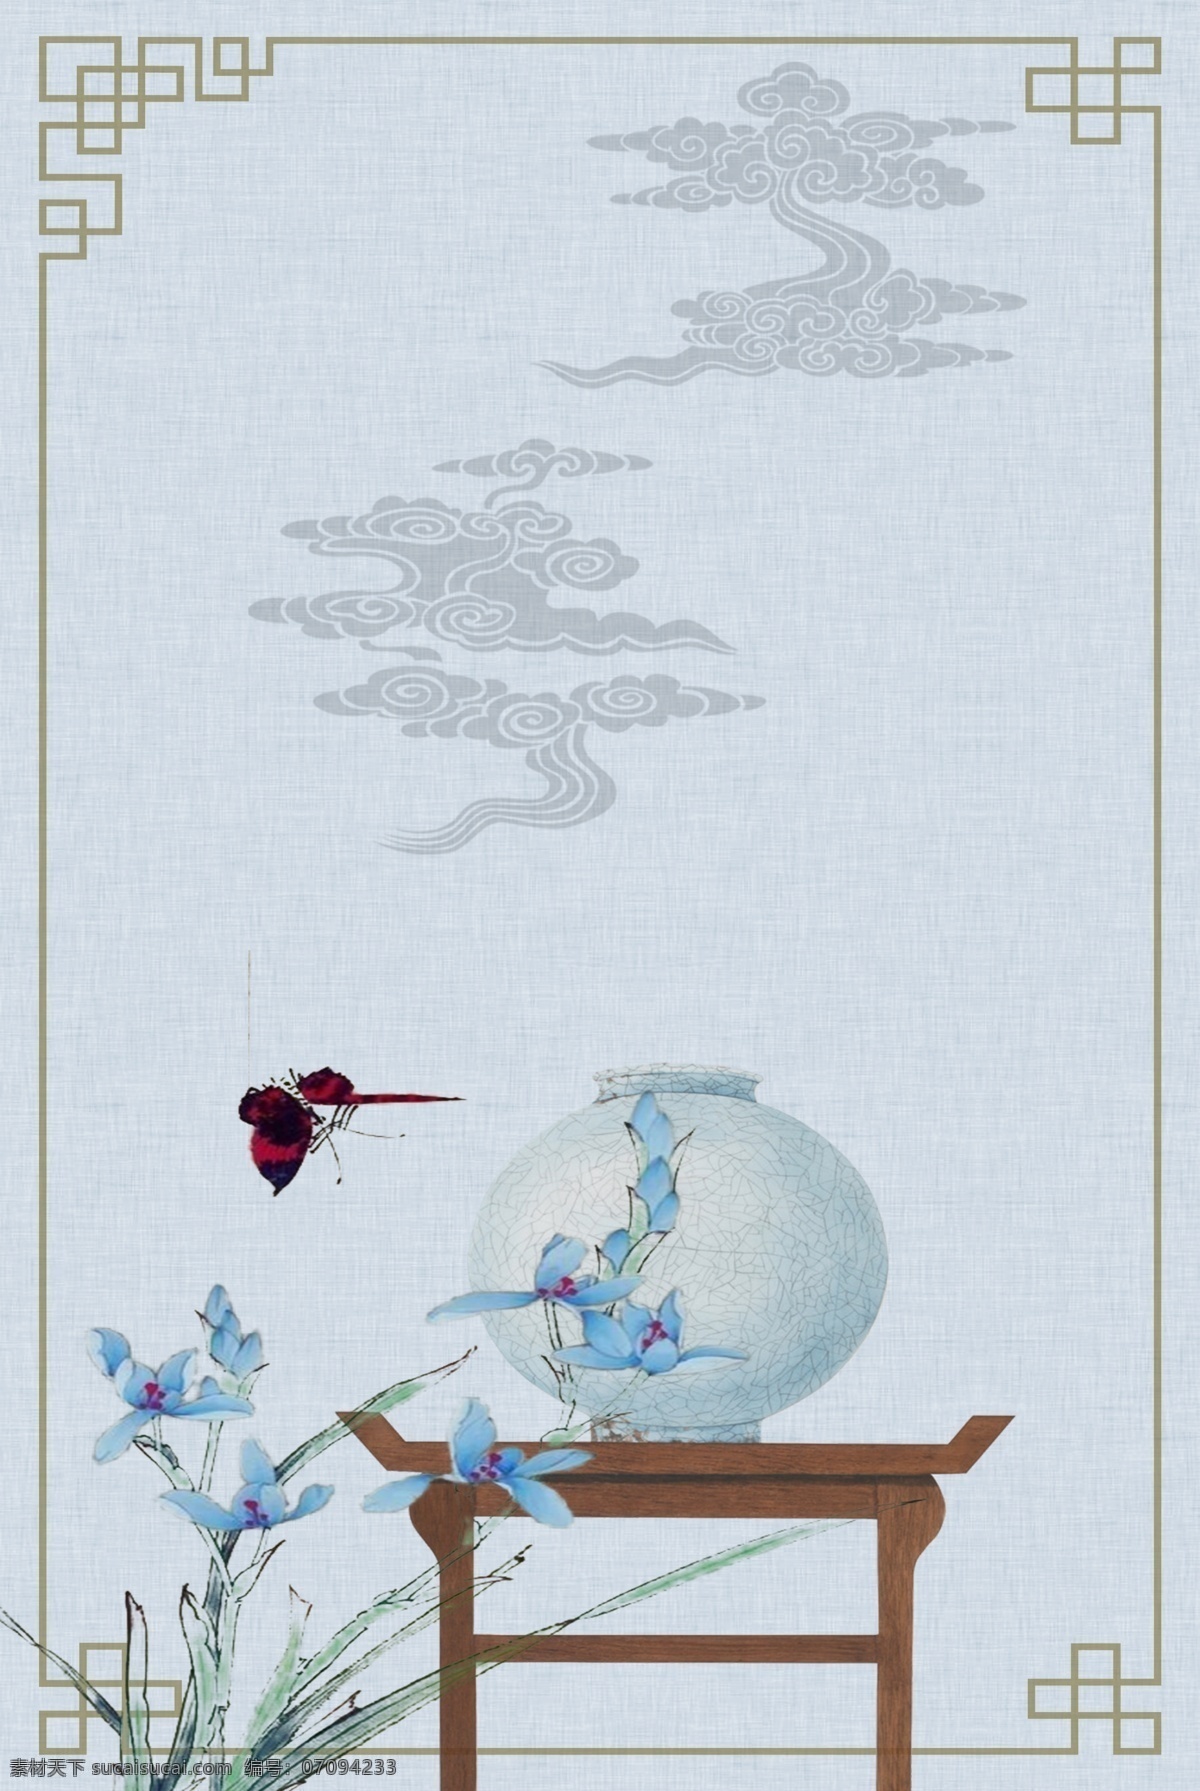 h5 清新 传统 古风 手绘 水墨 花鸟 纹理 背景 古典 蓝色